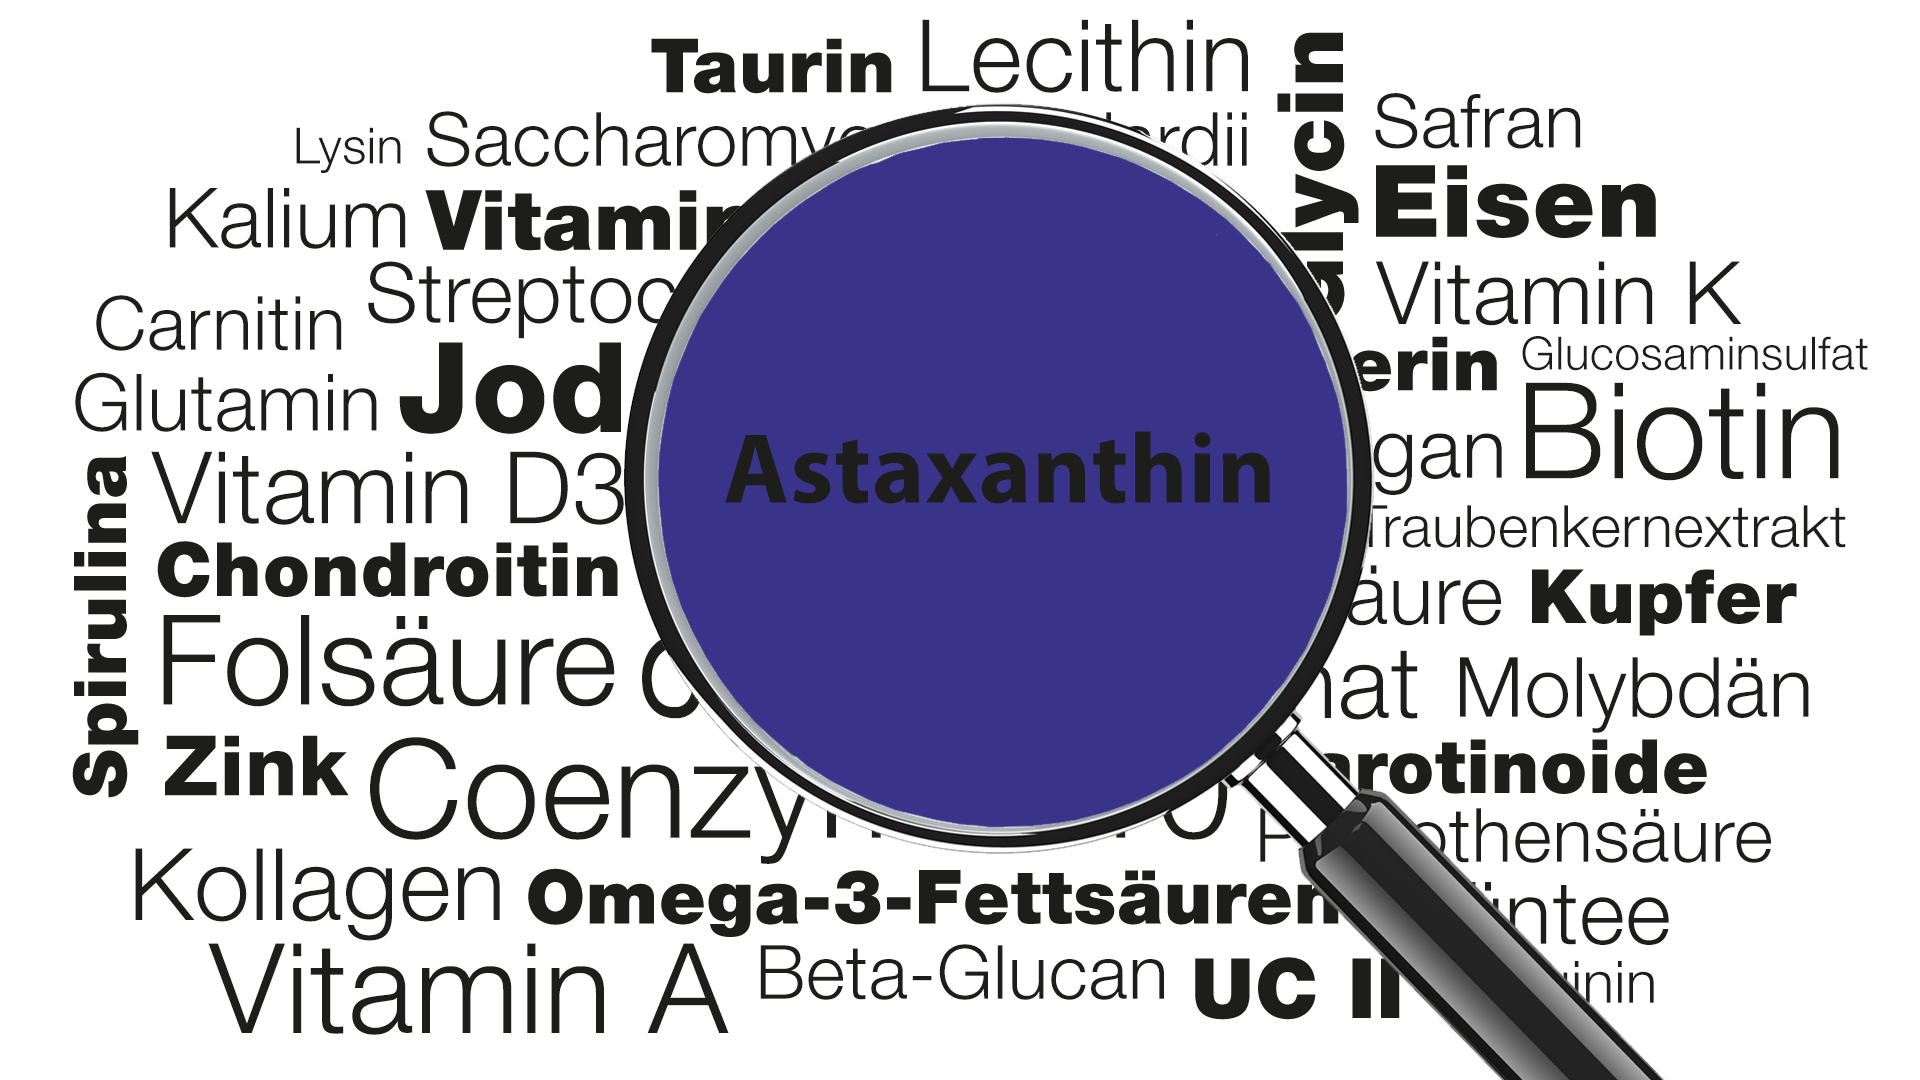 Lupe mit Wort Astaxanthin im Fokus » Wissenswertes zu Funktionen, Anwendungsgebieten, Zufuhrempfehlung | Burgerstein Foundation